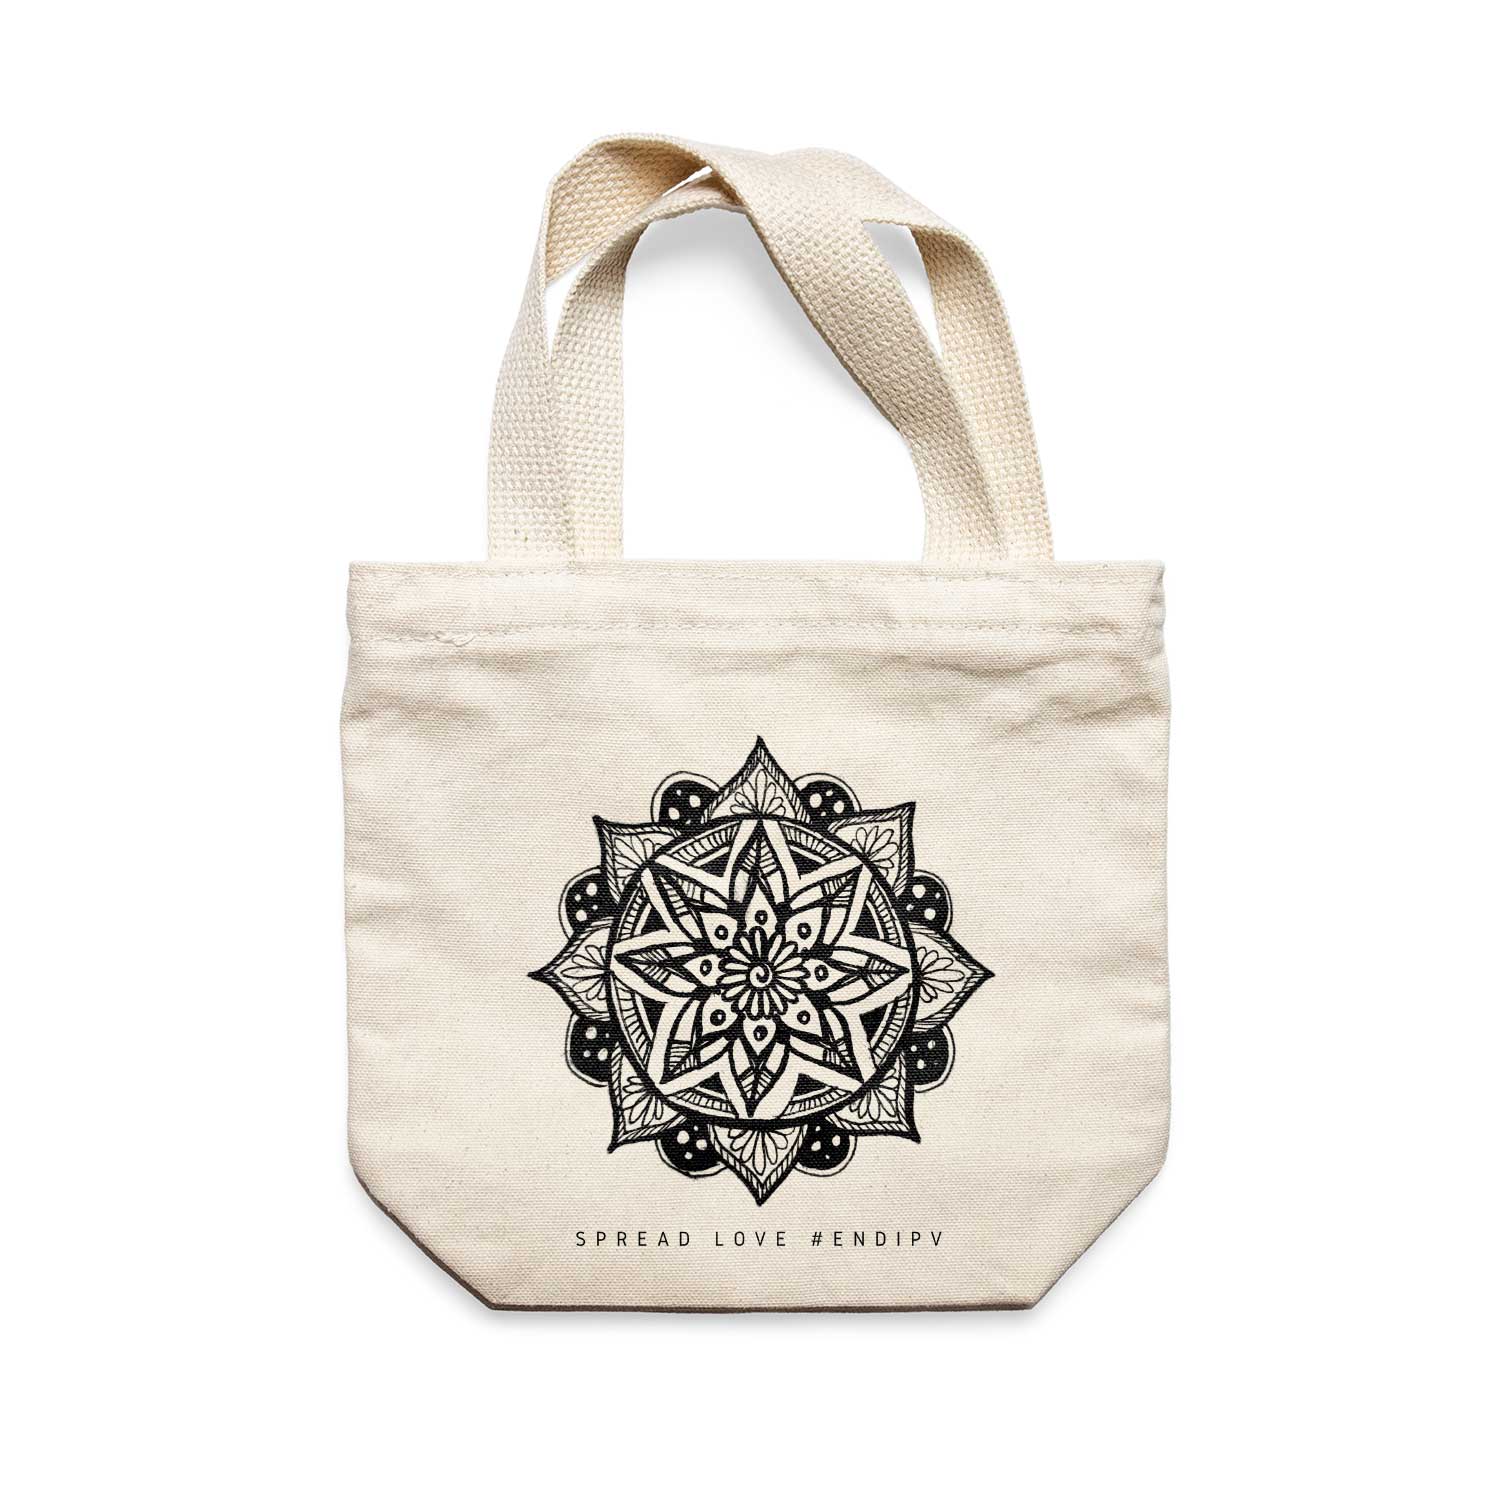 תיק צד לנשים וגברים מבד 100% כותנה טבעית בעיצוב Mandala - Africaya Tote Bag מציור מקורי של גאיה